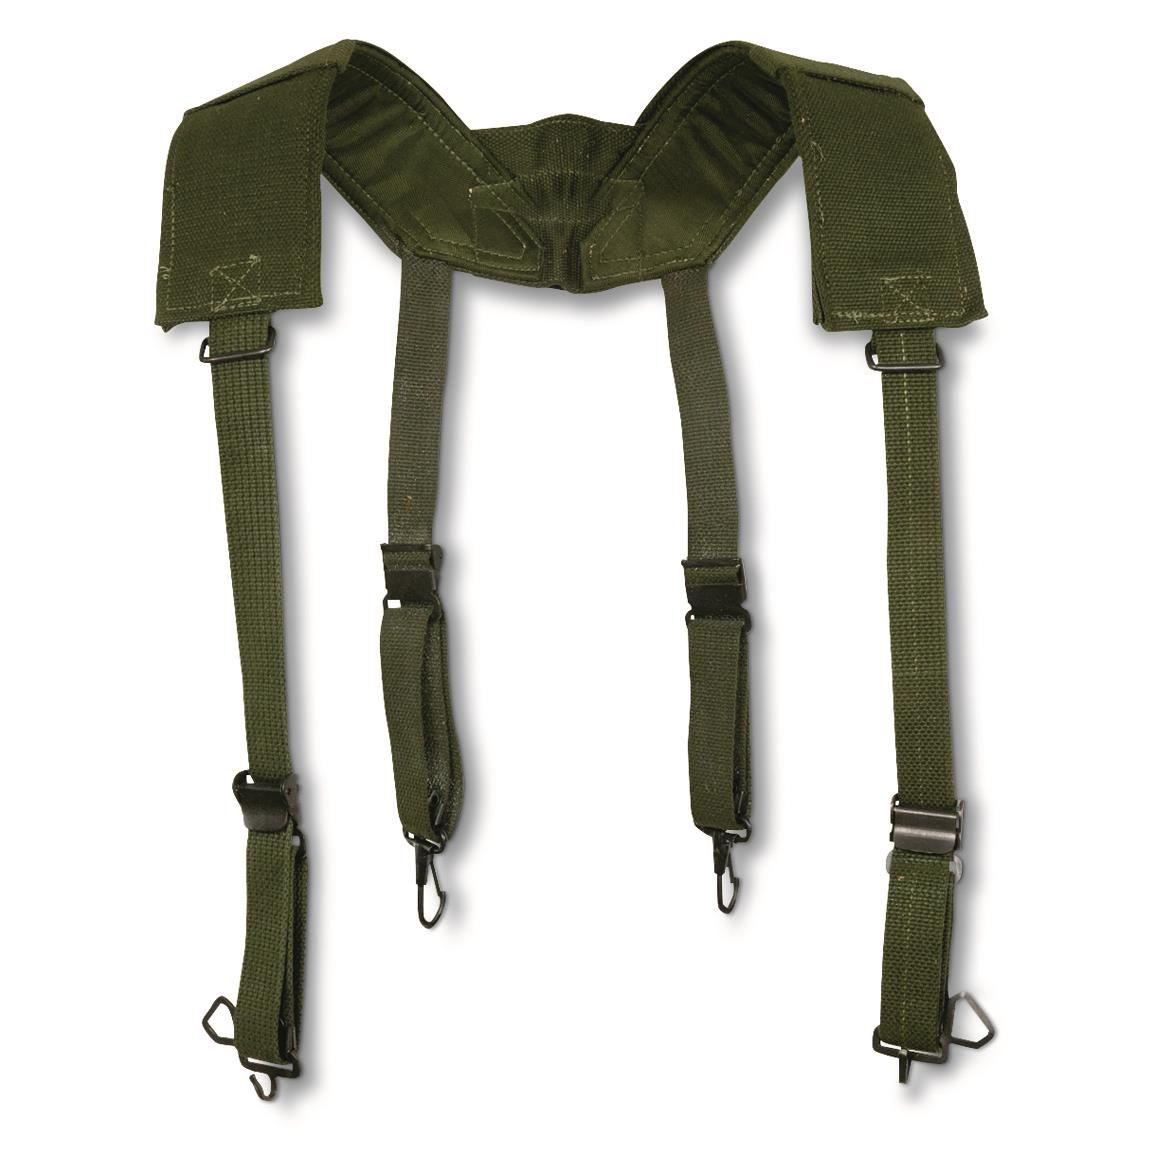 Belgian Military M56 Suspenders, 3 Pack, Used